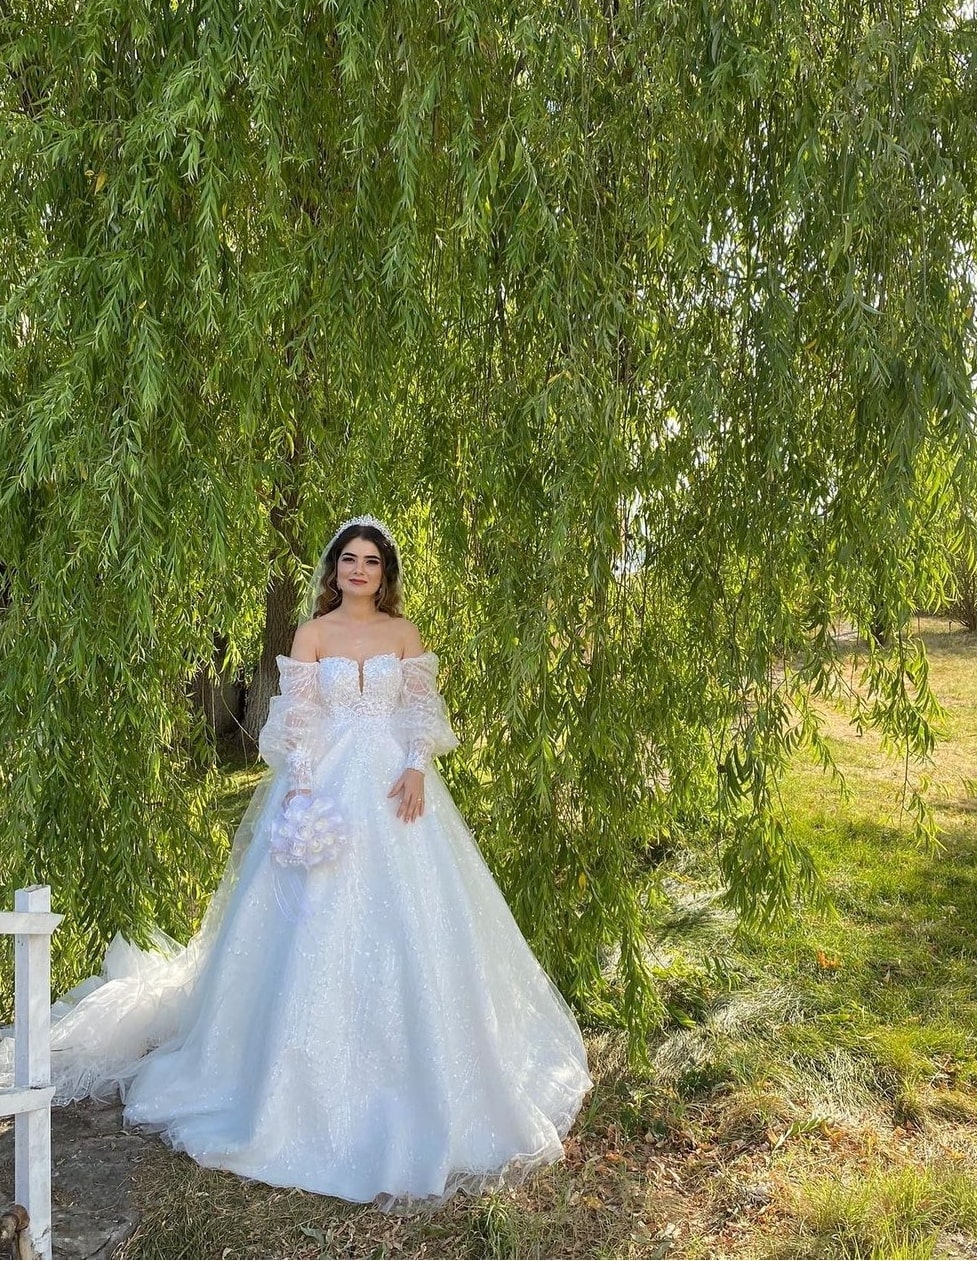 Çisem Gürgen Wedding Dress